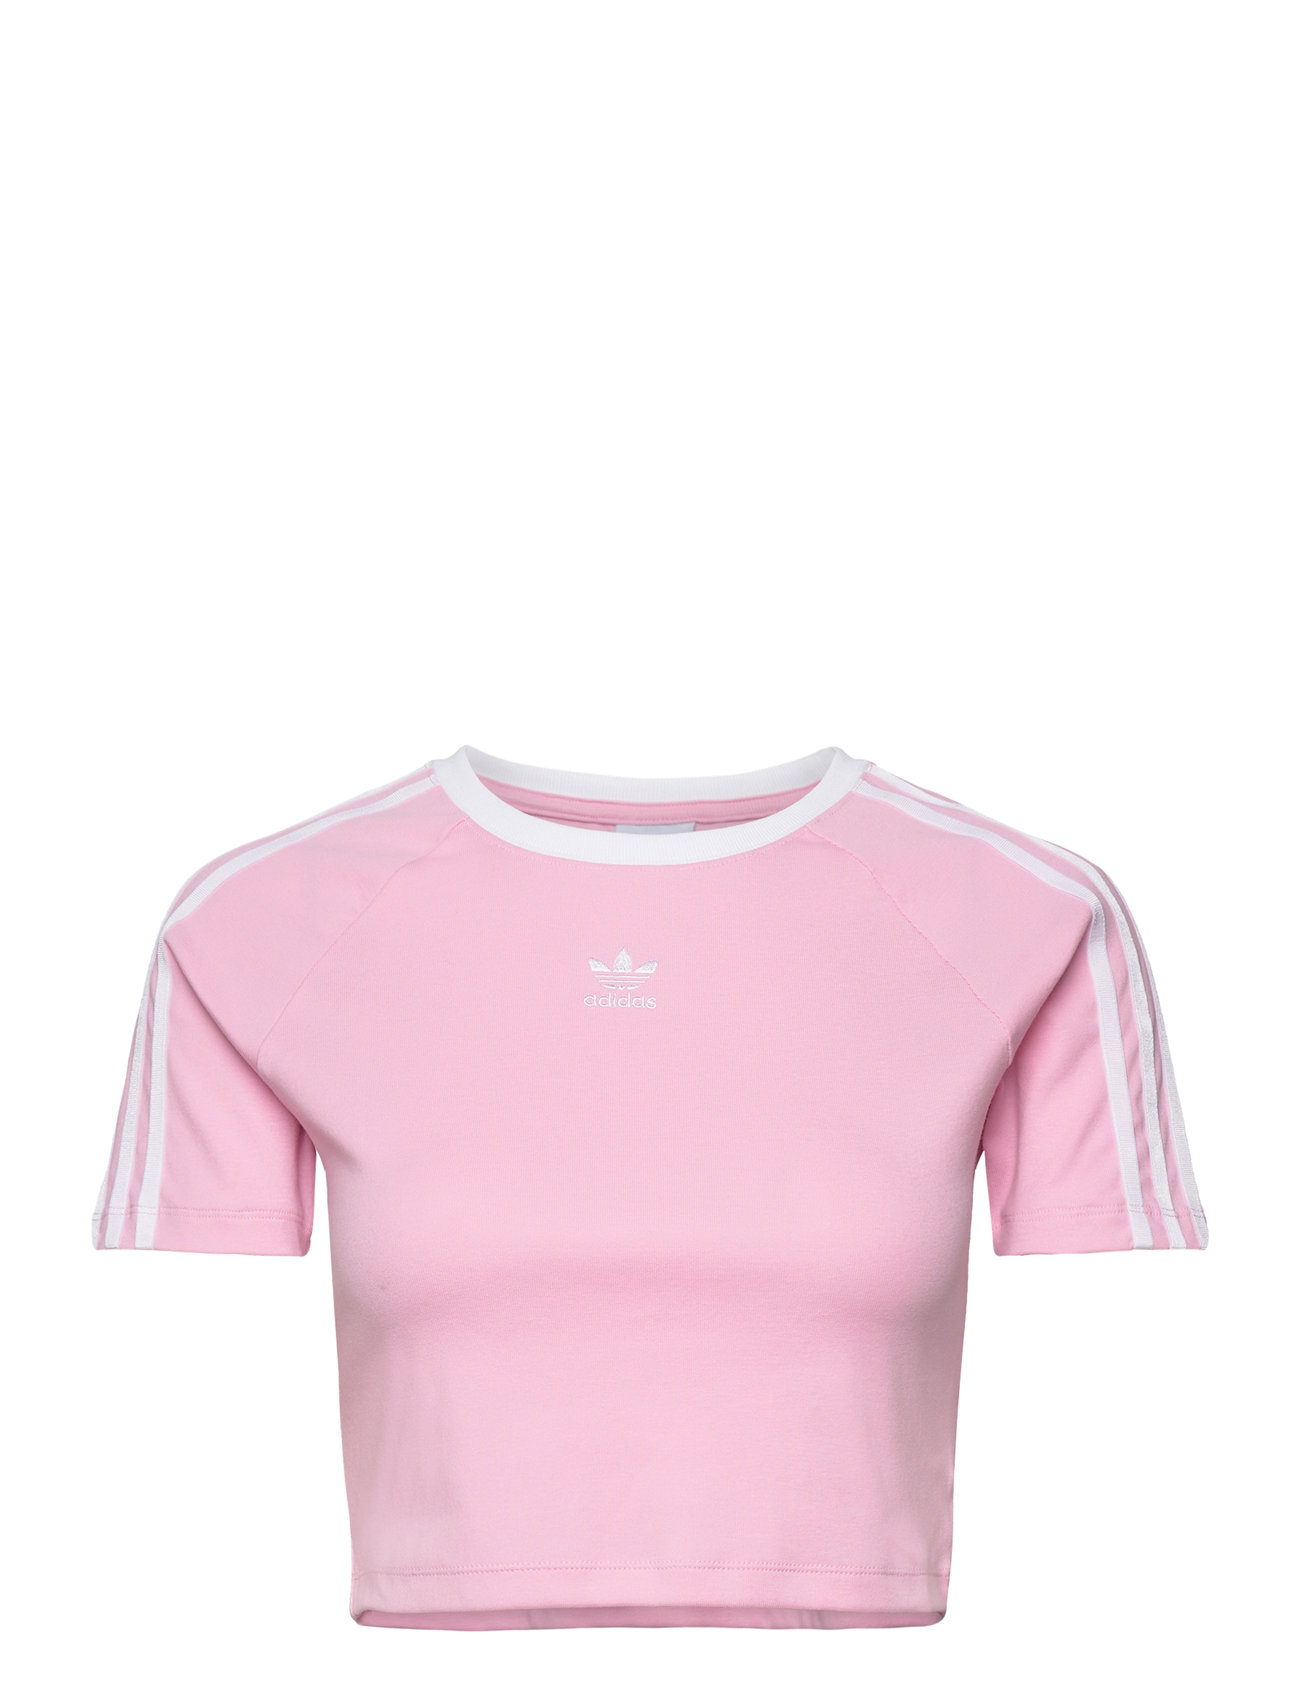 3 S Baby Tee Sport Crop Tops Short-sleeved Crop Tops Pink Adidas Originals